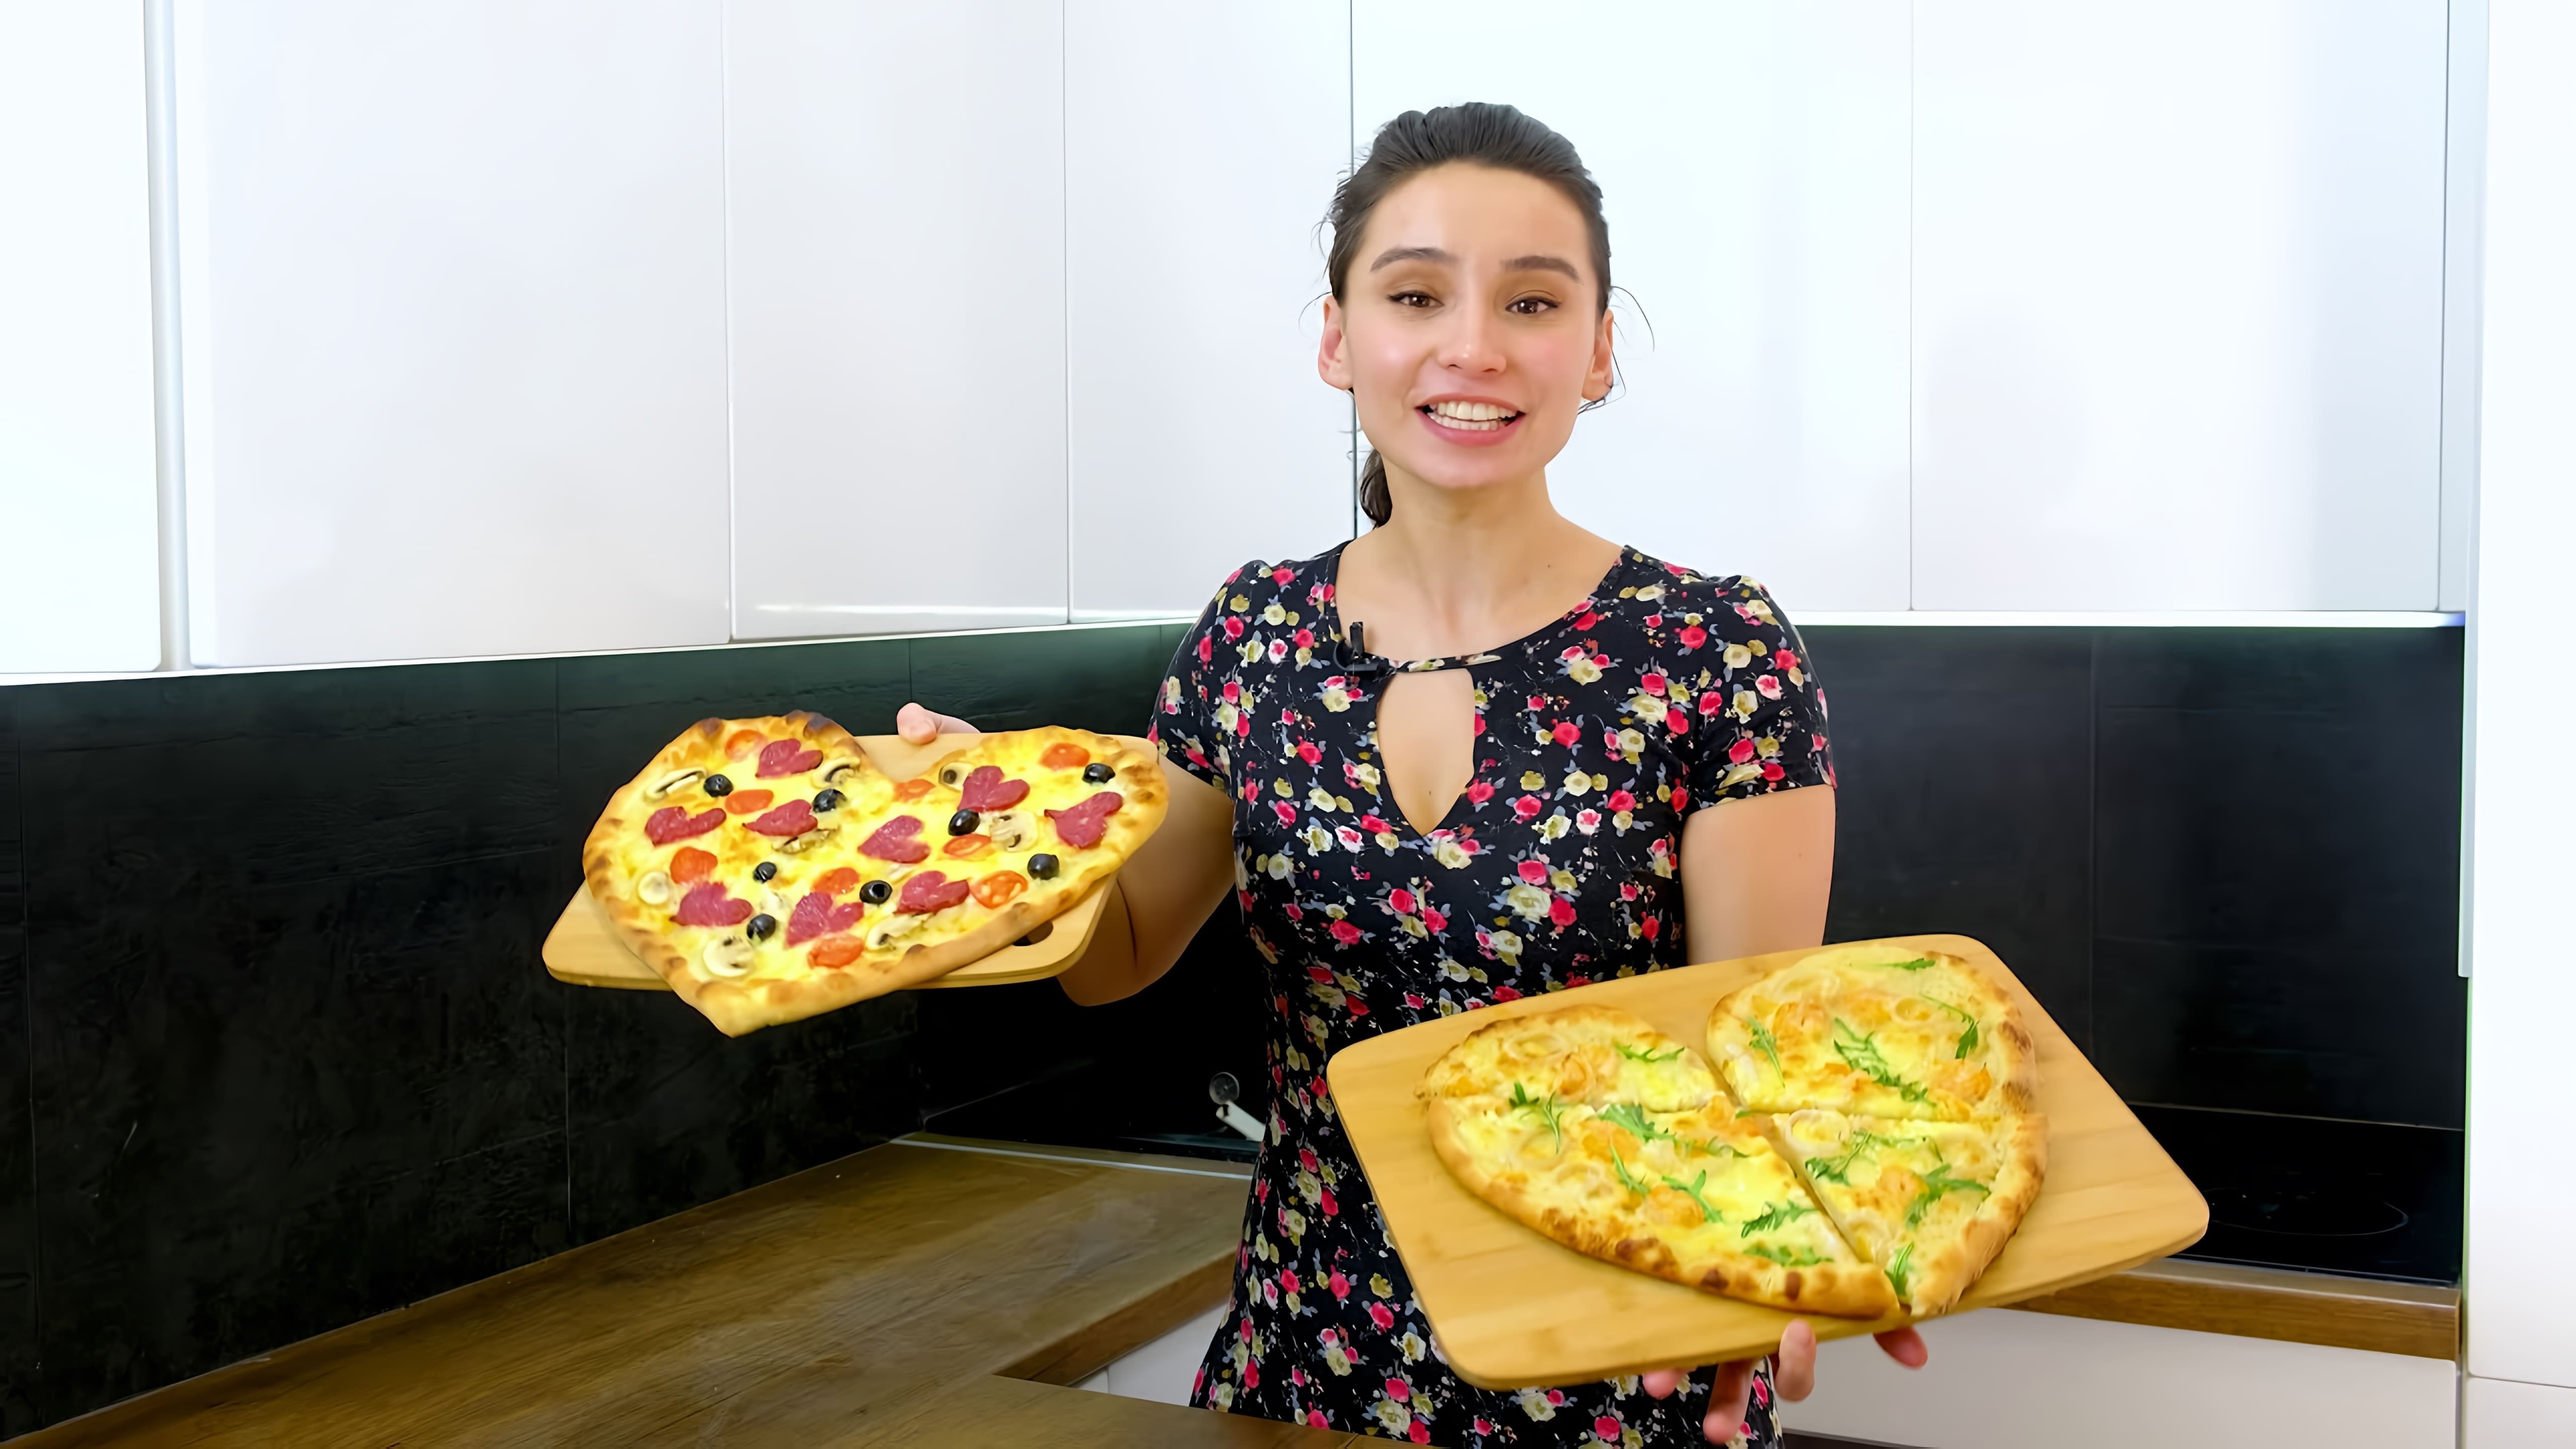 В этом видео демонстрируется процесс приготовления пиццы "Валентинка" с белым соусом в домашних условиях